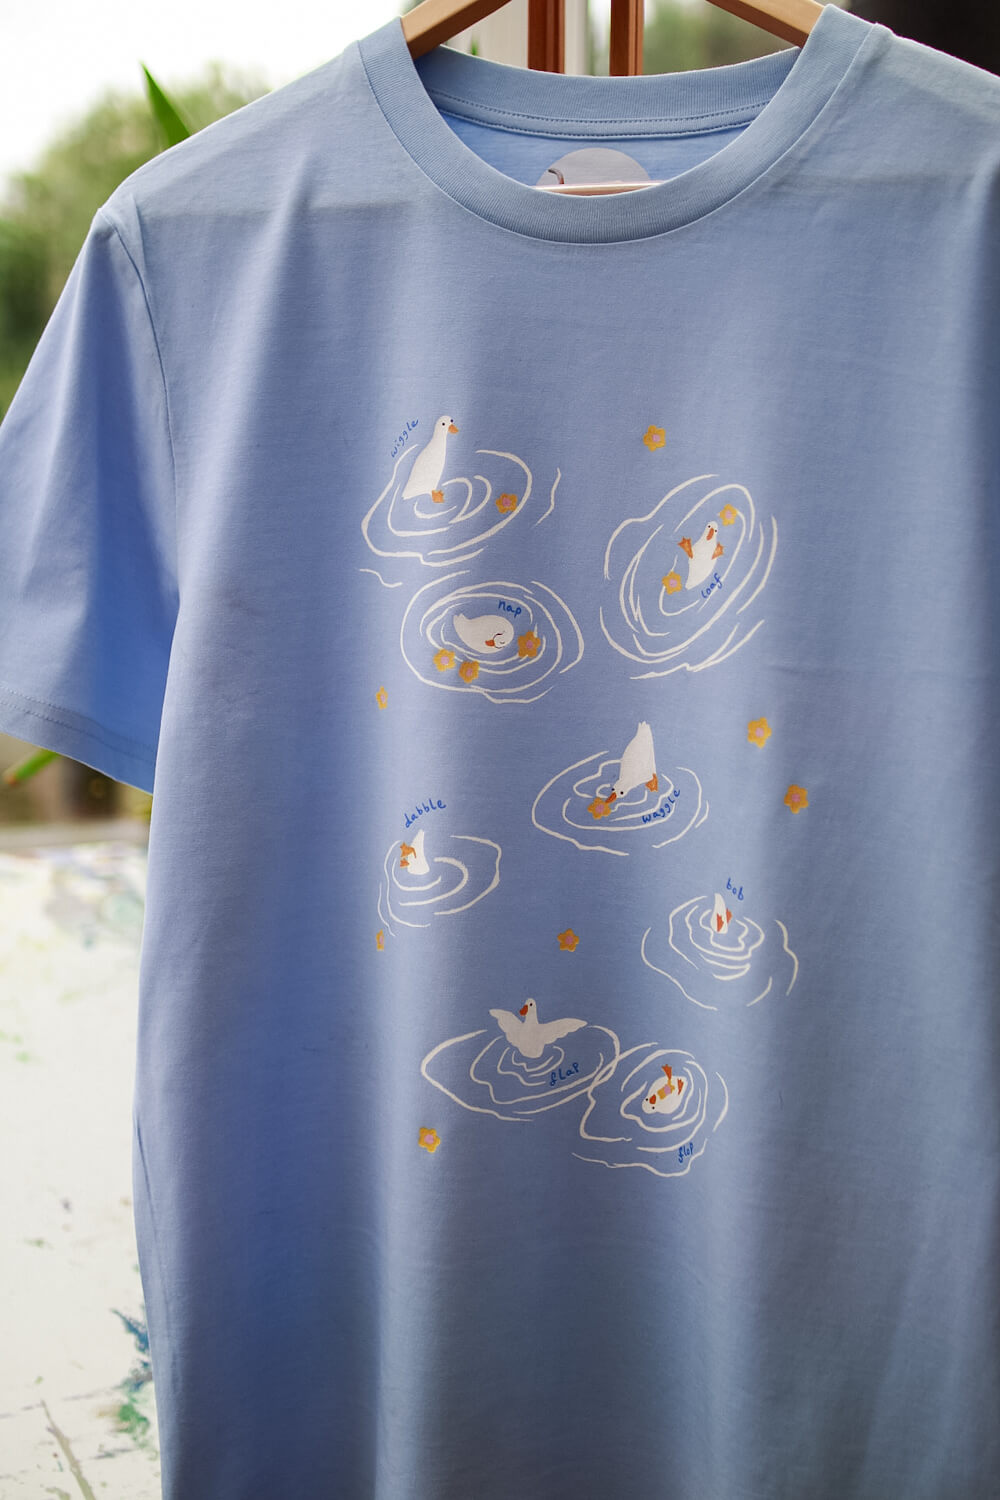 Cute ducks in flowers T-shirt